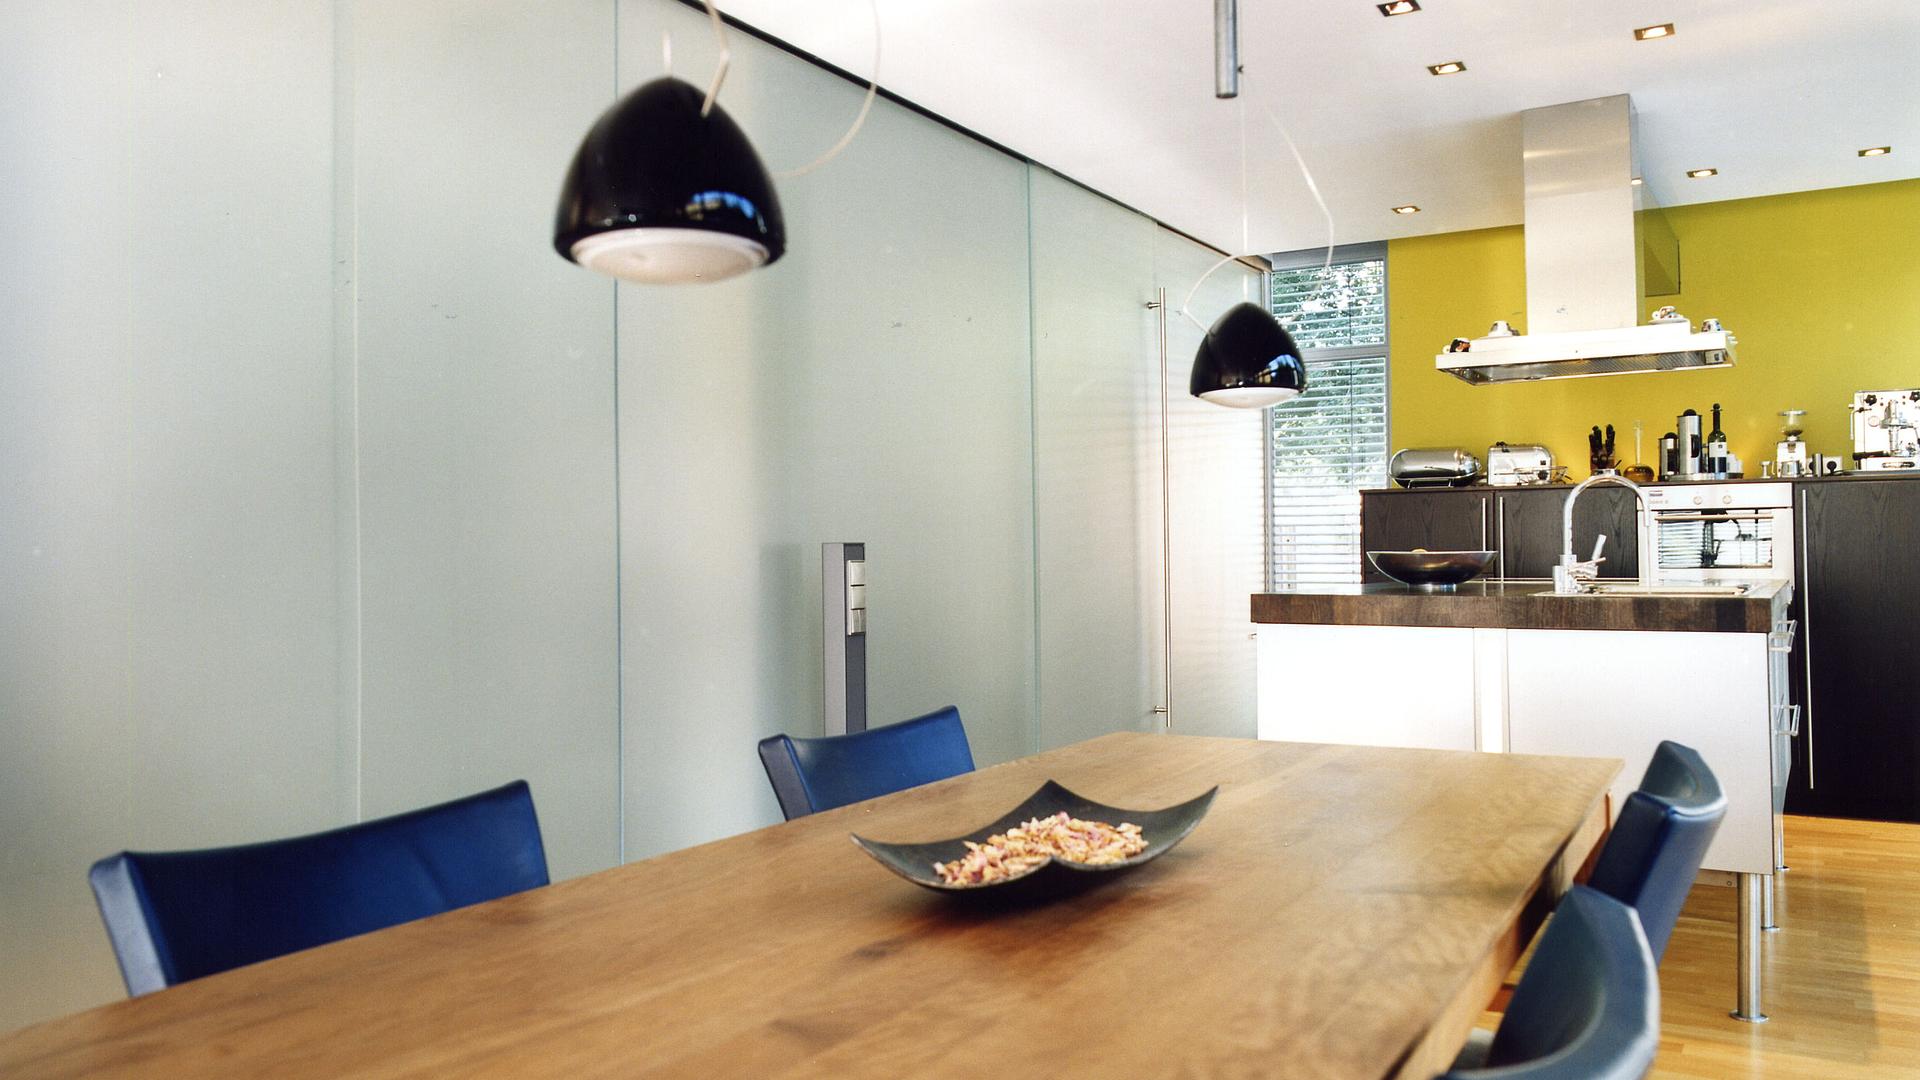 Bild: Esszimmer und Küche im modernen Kubushaus